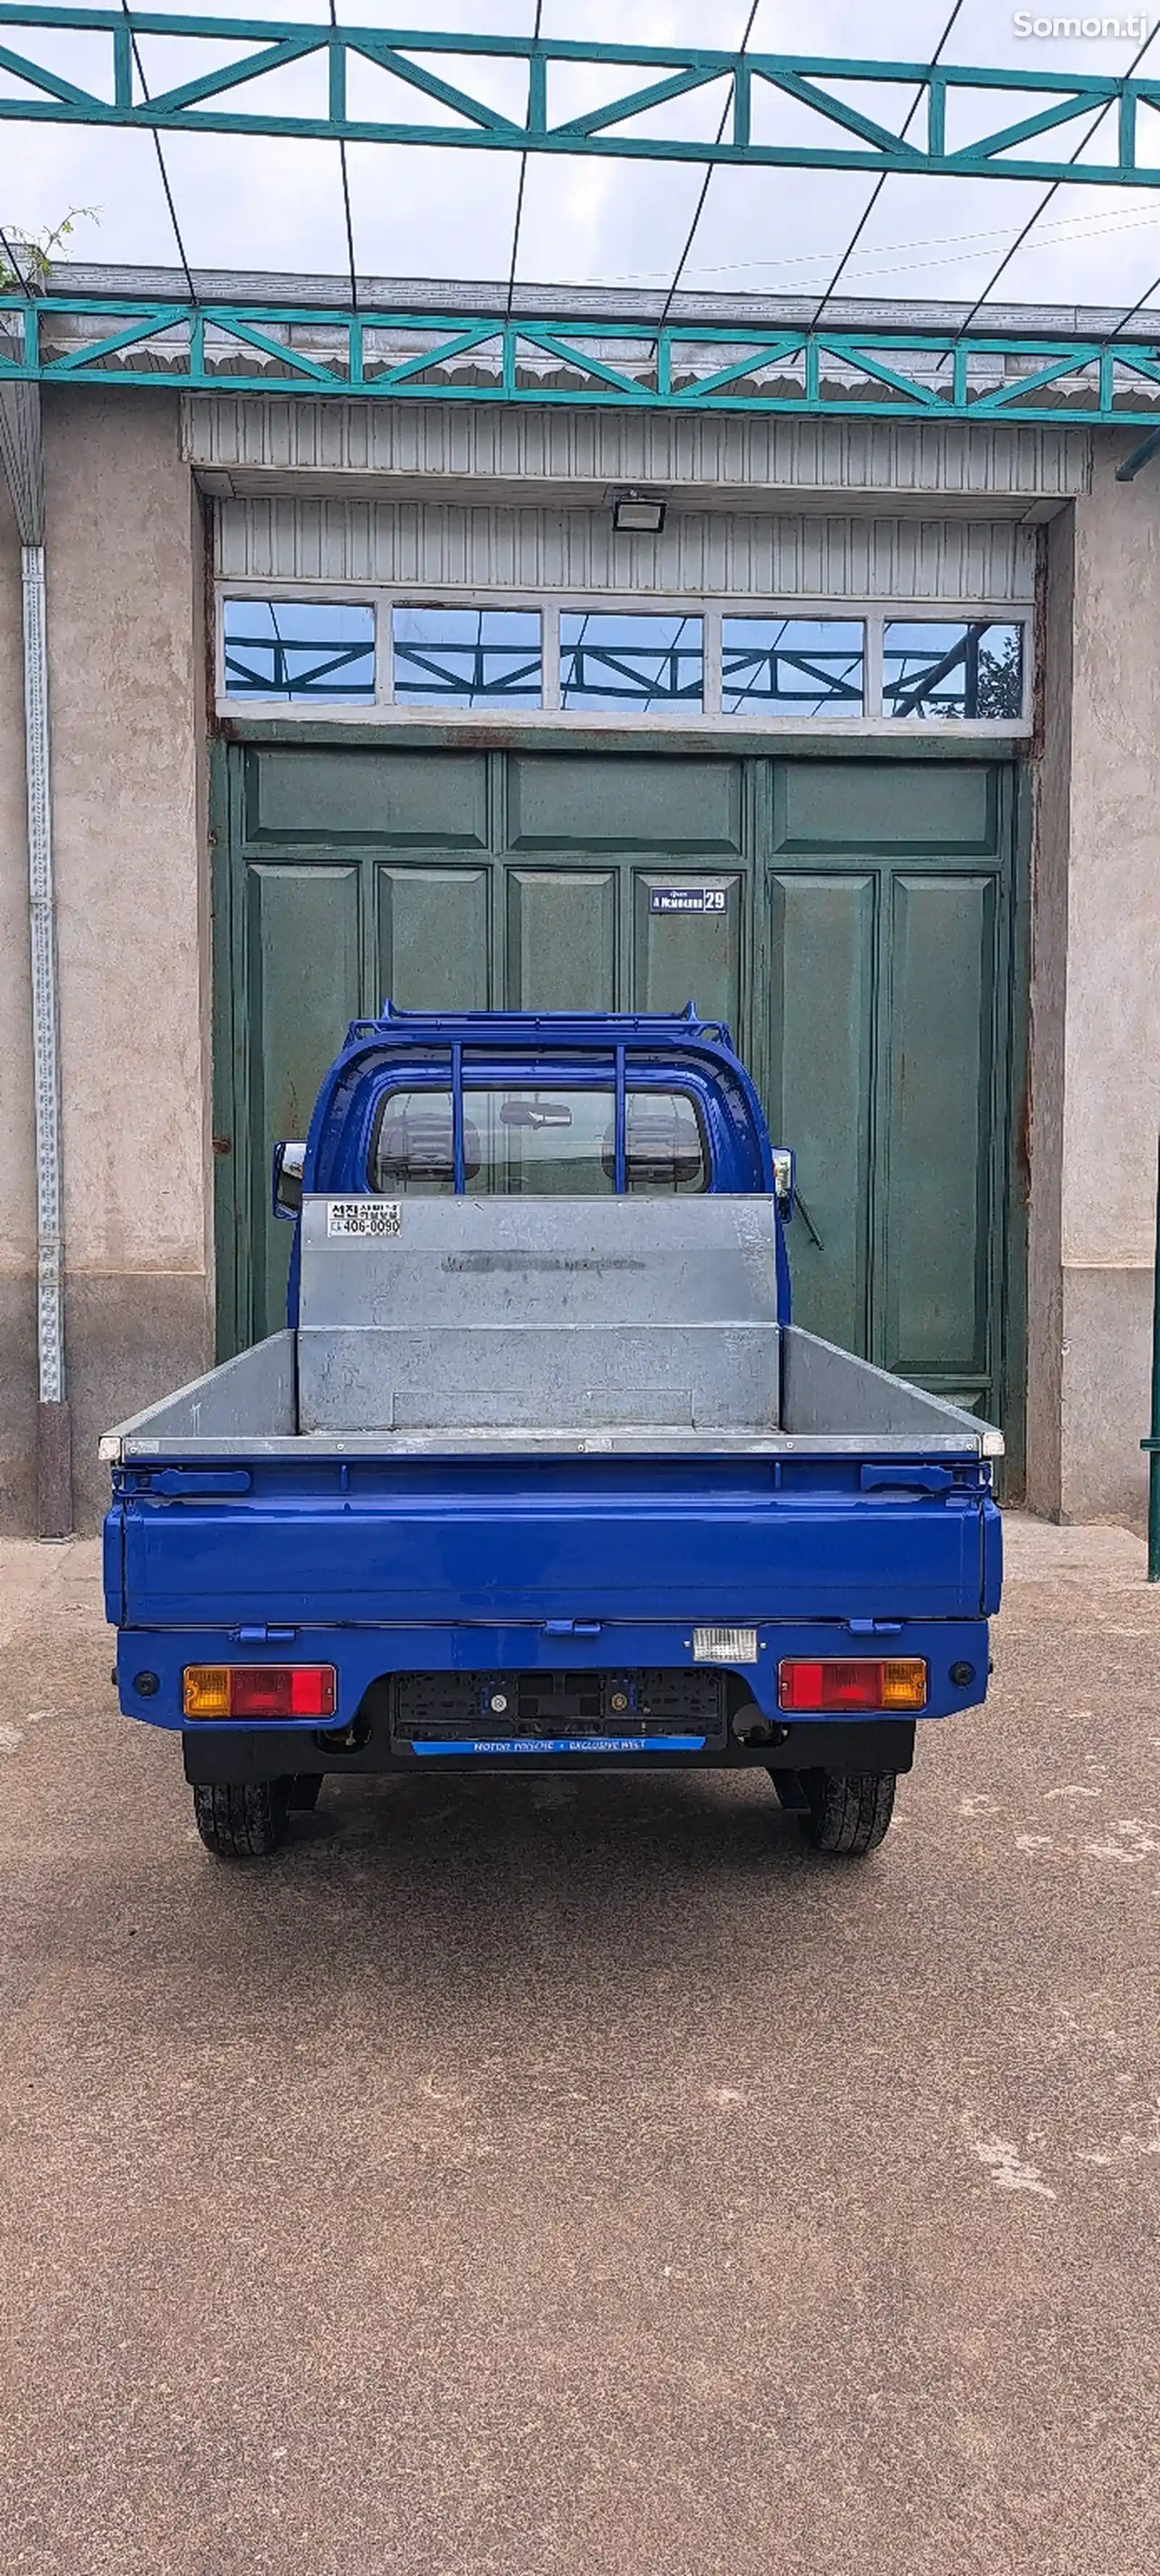 Бортовой автомобиль Daewoo Labo, 2014-2